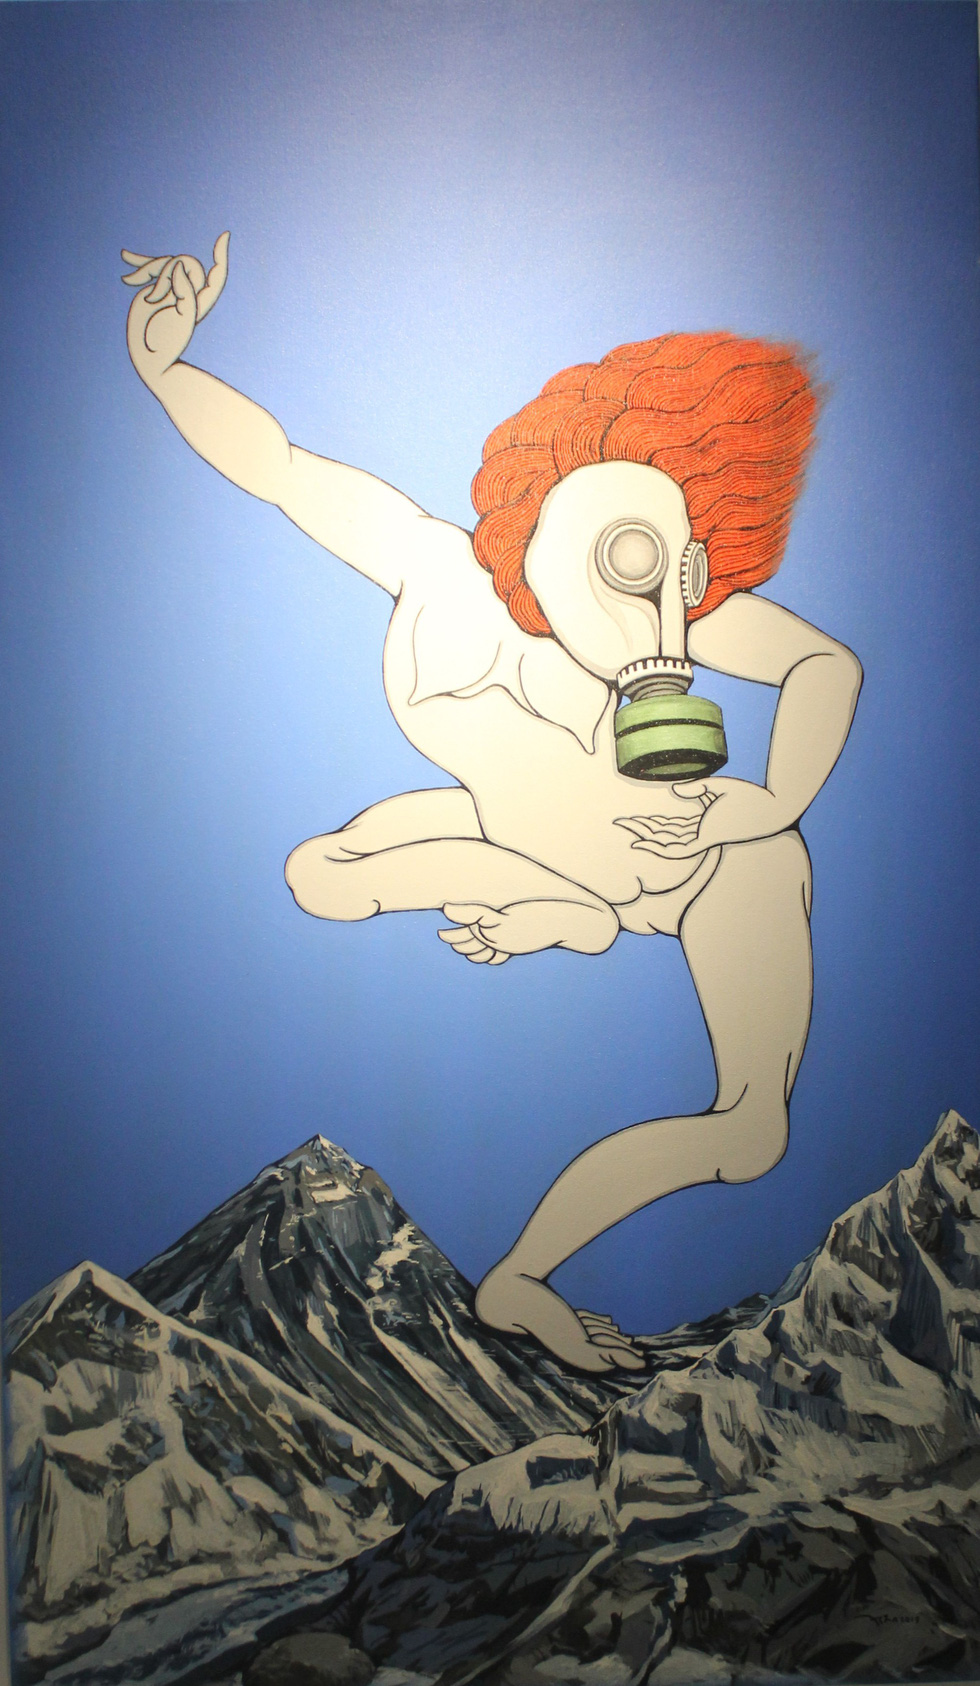 A painting by Nepali artist Asha Dangol